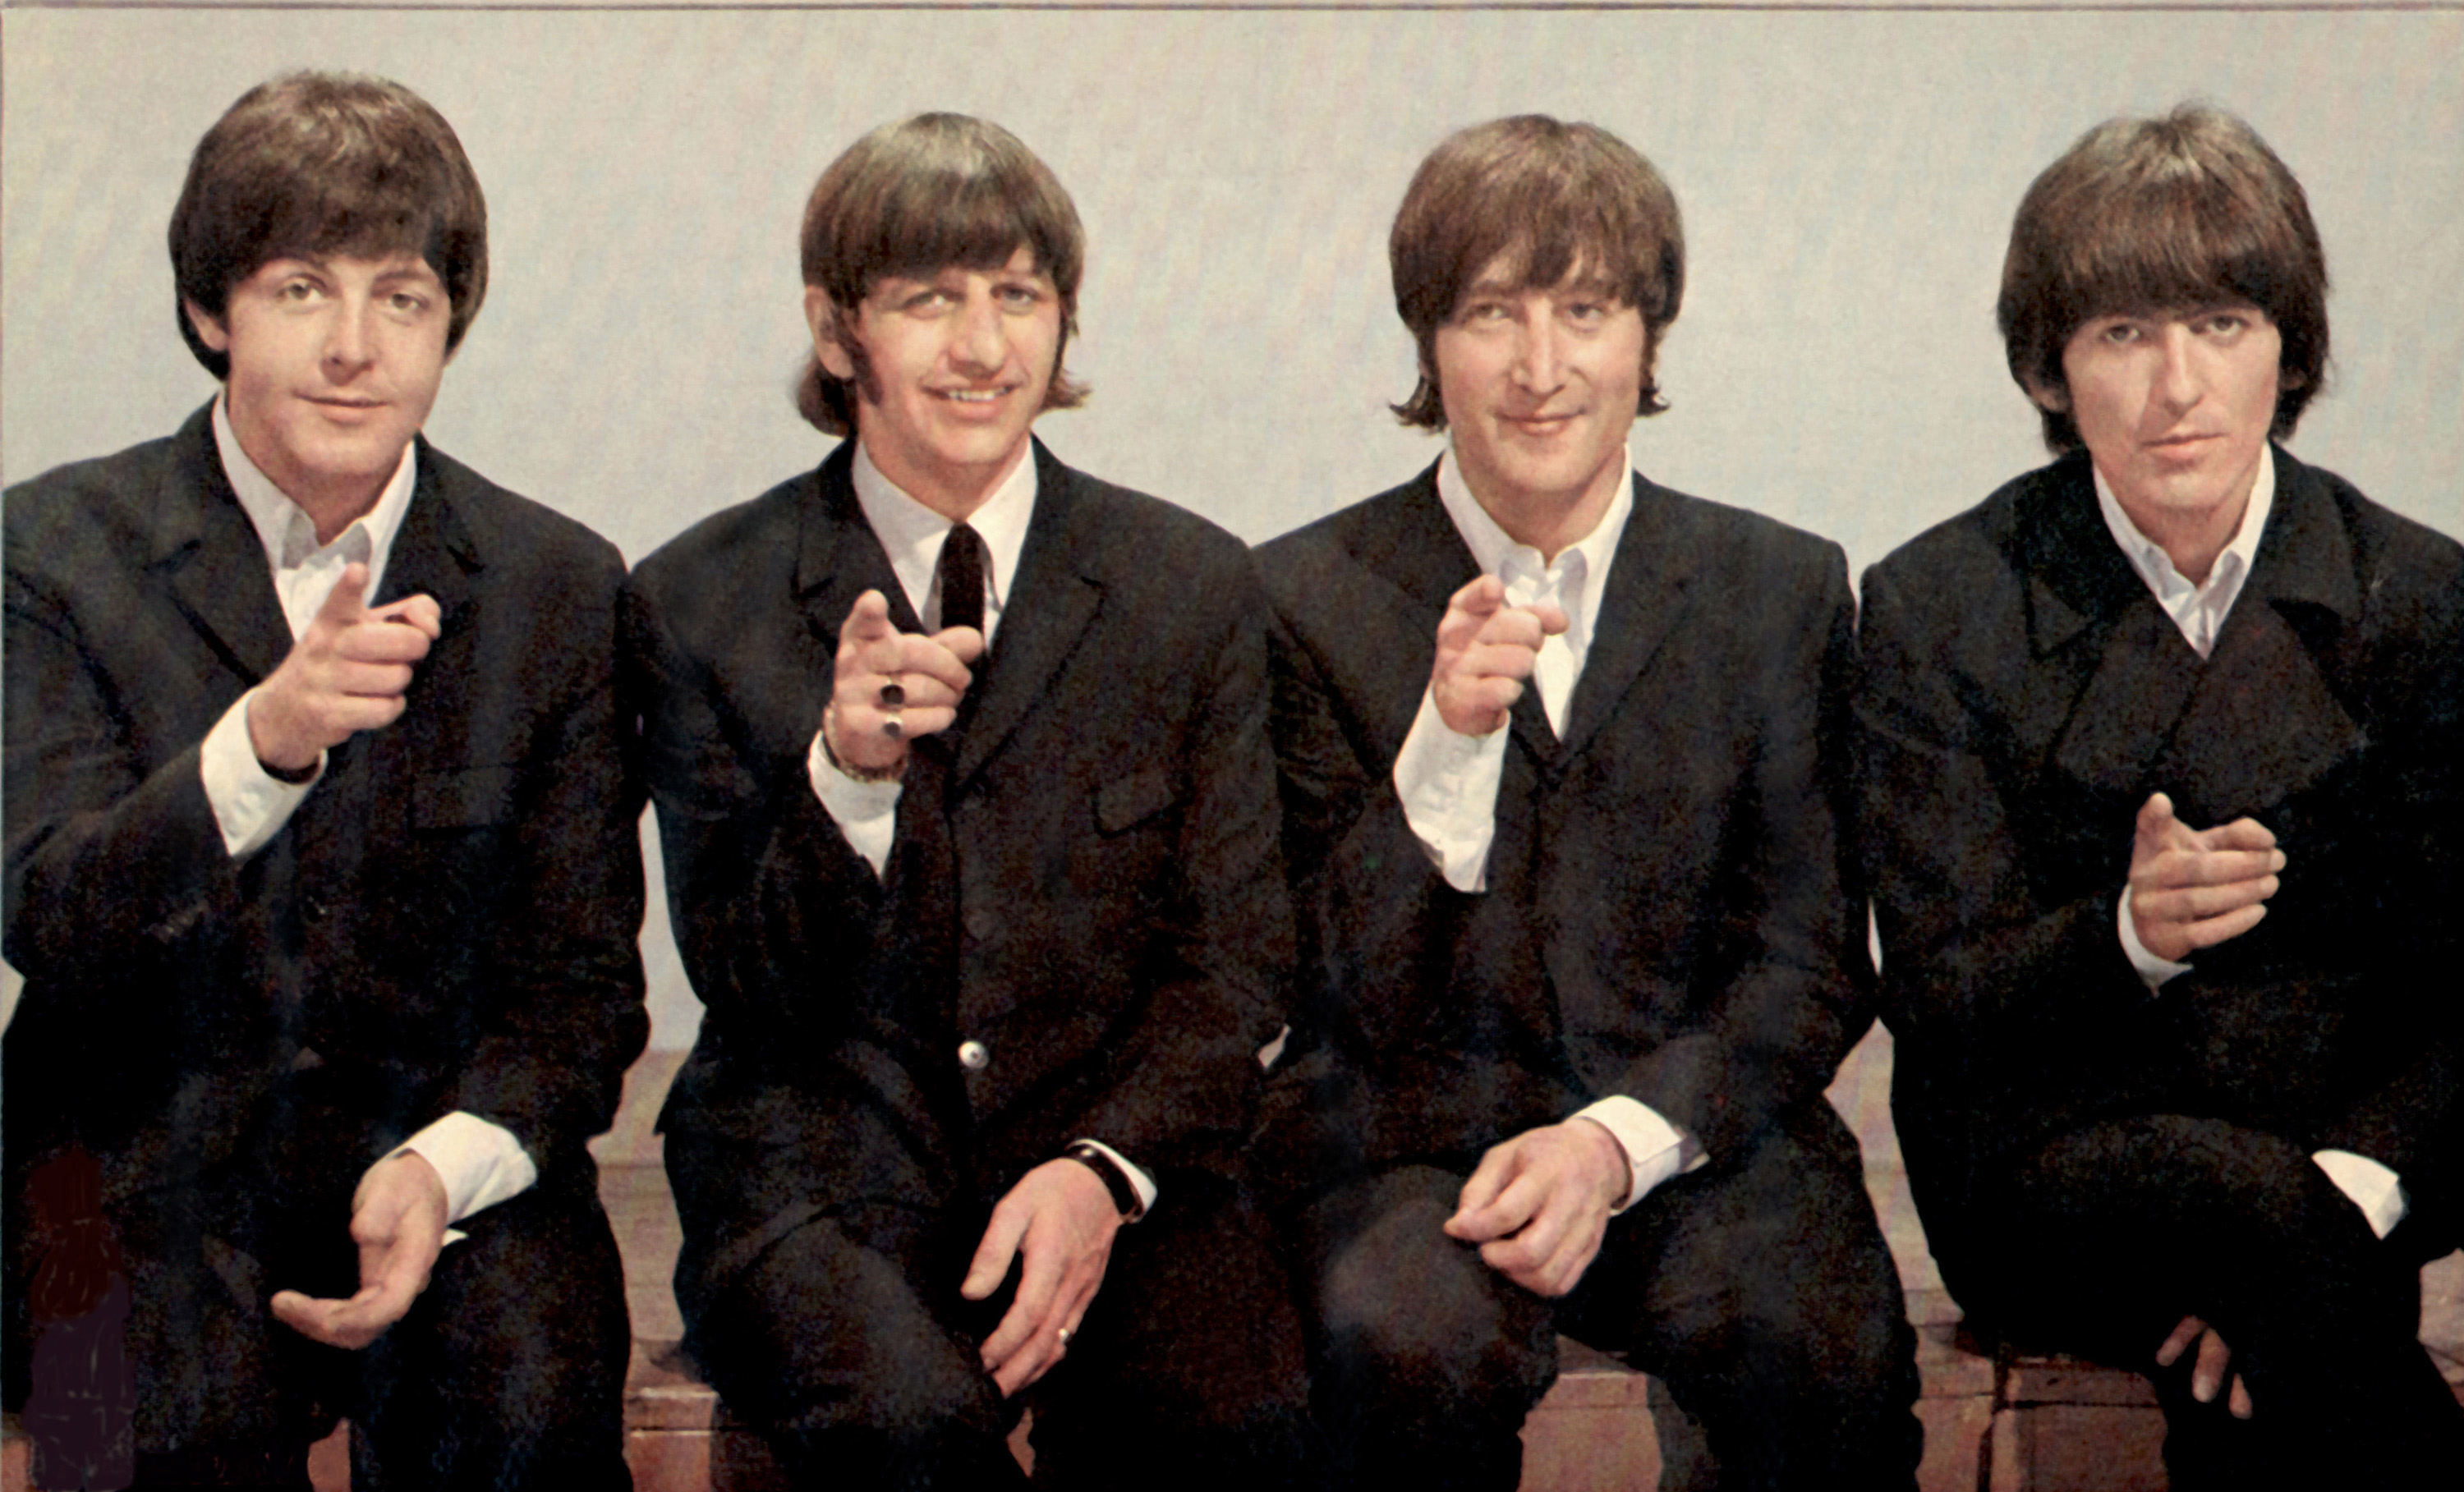 Les chansons des Beatles jouées 50 millions de fois en 48 heures |  Temps